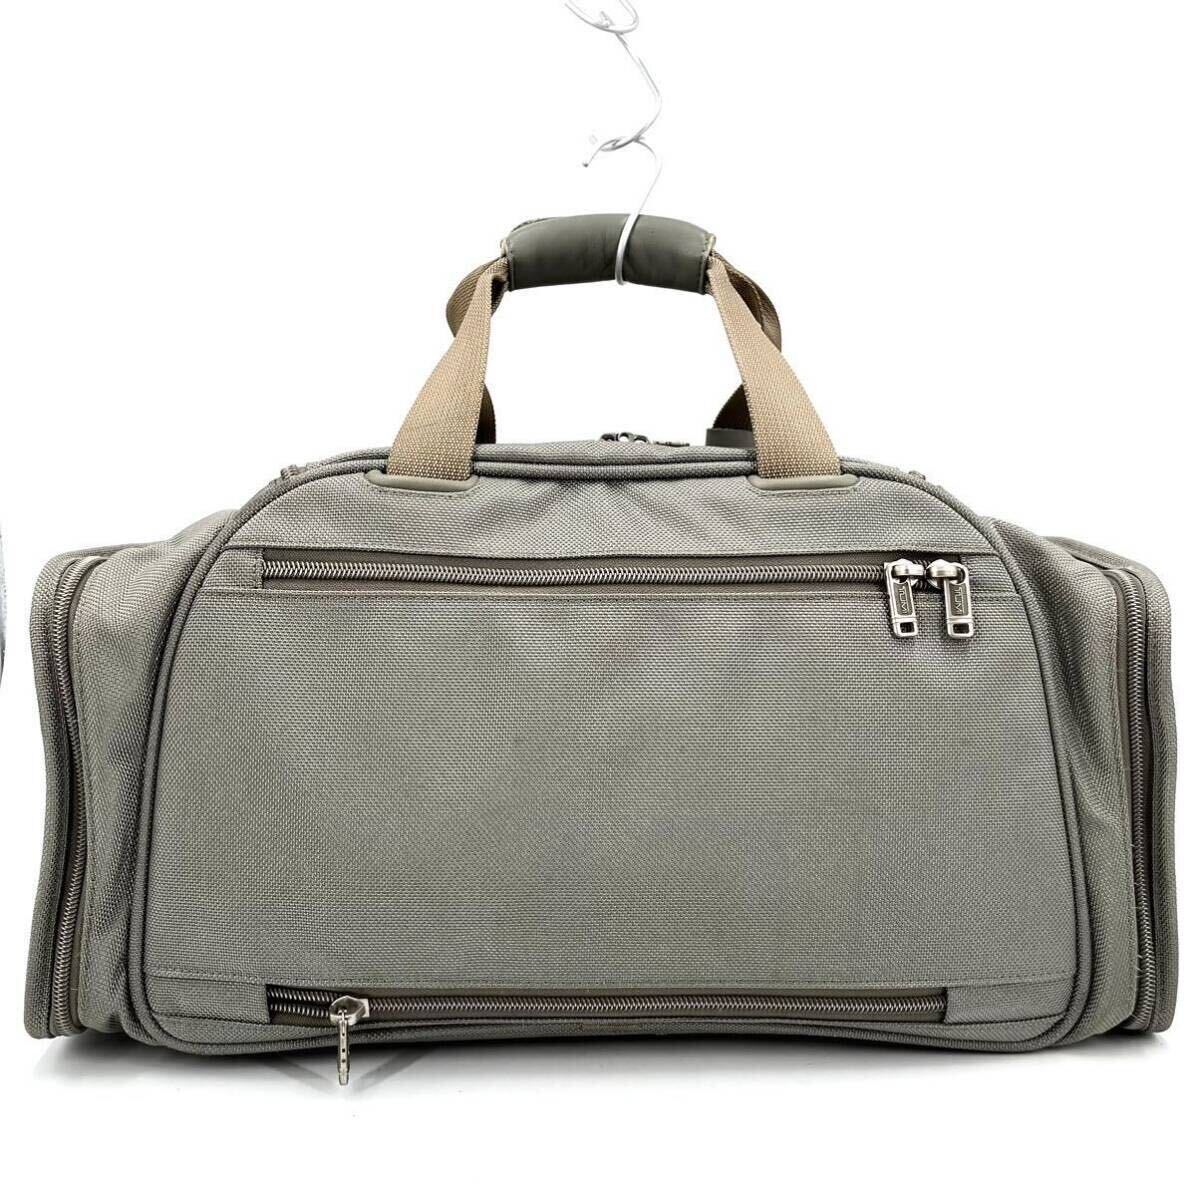 1 иен { редкий цвет * превосходный товар }TUMI Tumi сумка "Boston bag" 2way бизнес шероховатость палочка нейлон мужской серебряный зеленый обувь место хранения Golf независимый 